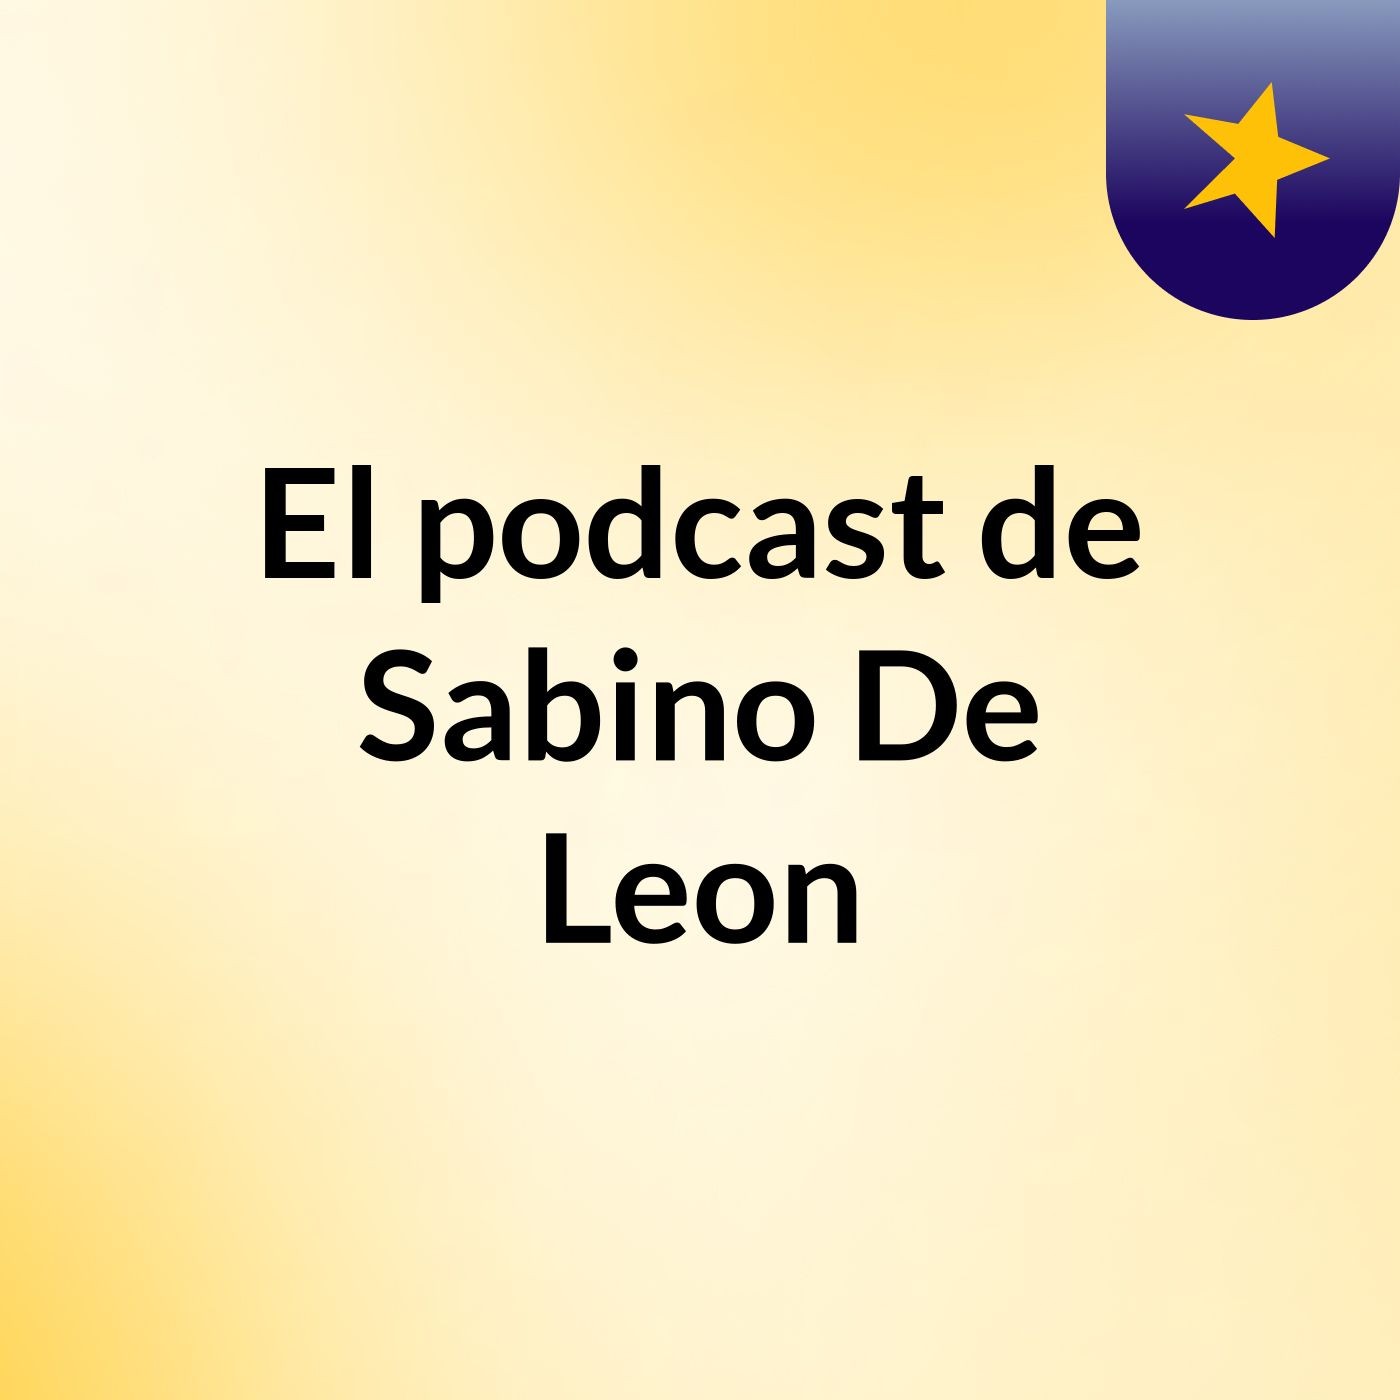 El podcast de Sabino De Leon